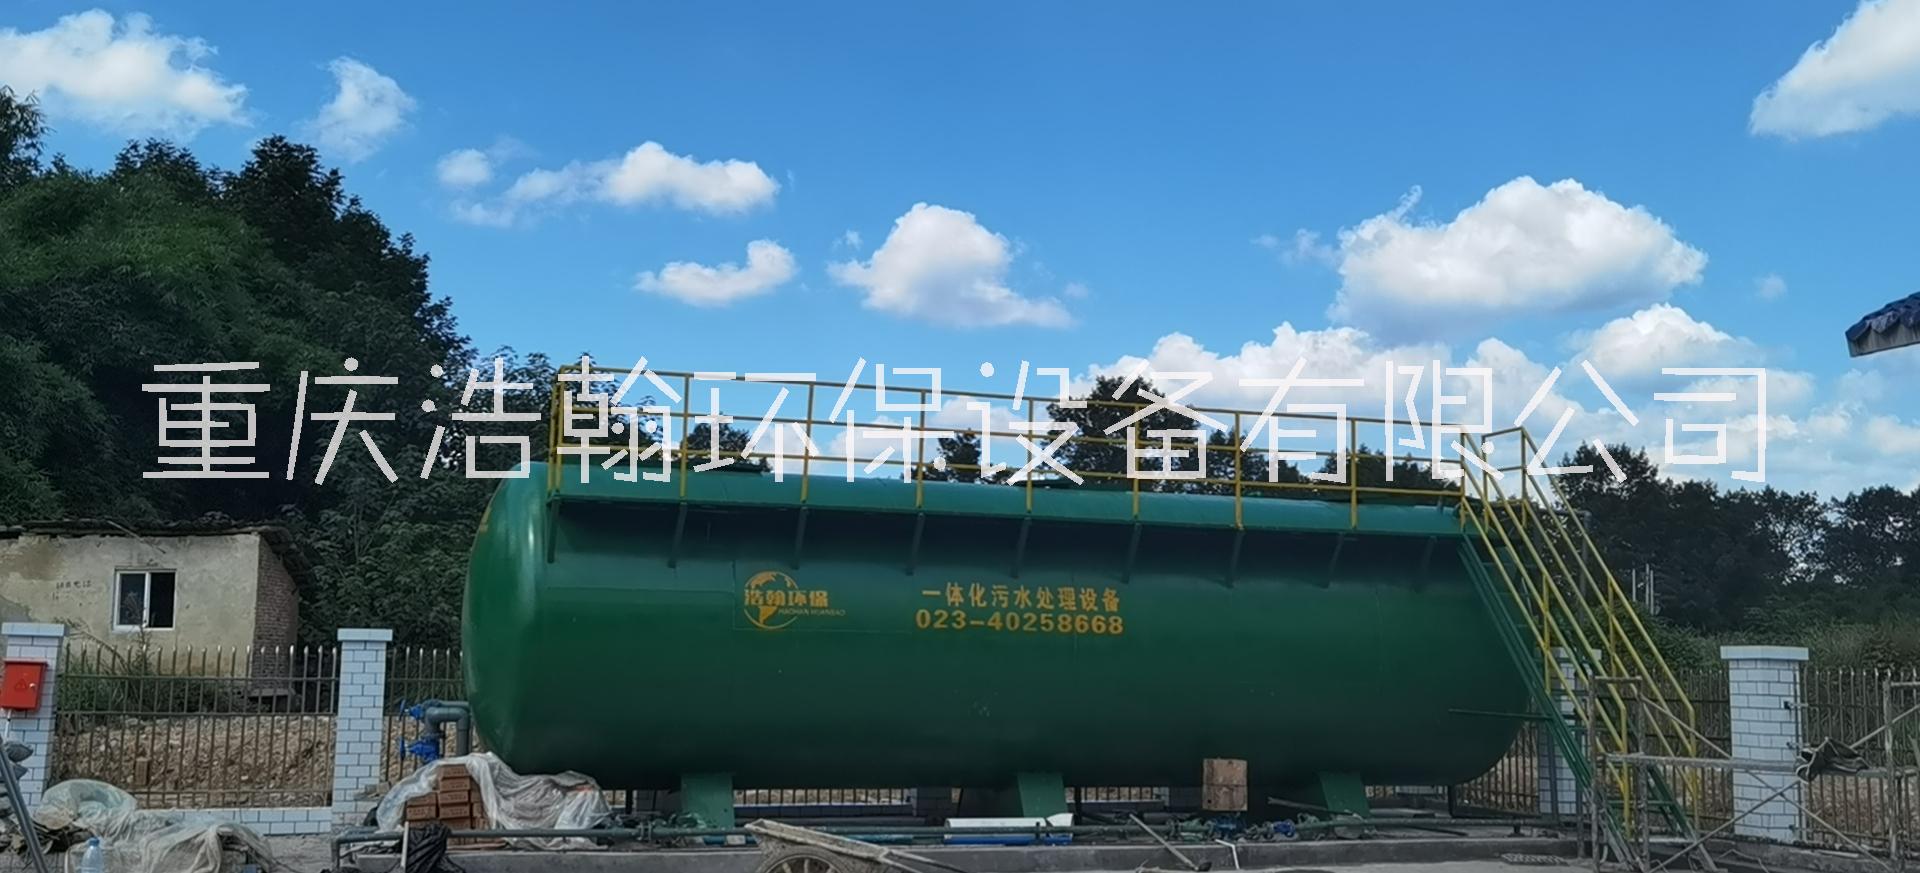 重庆一体化污水处理设备生产厂